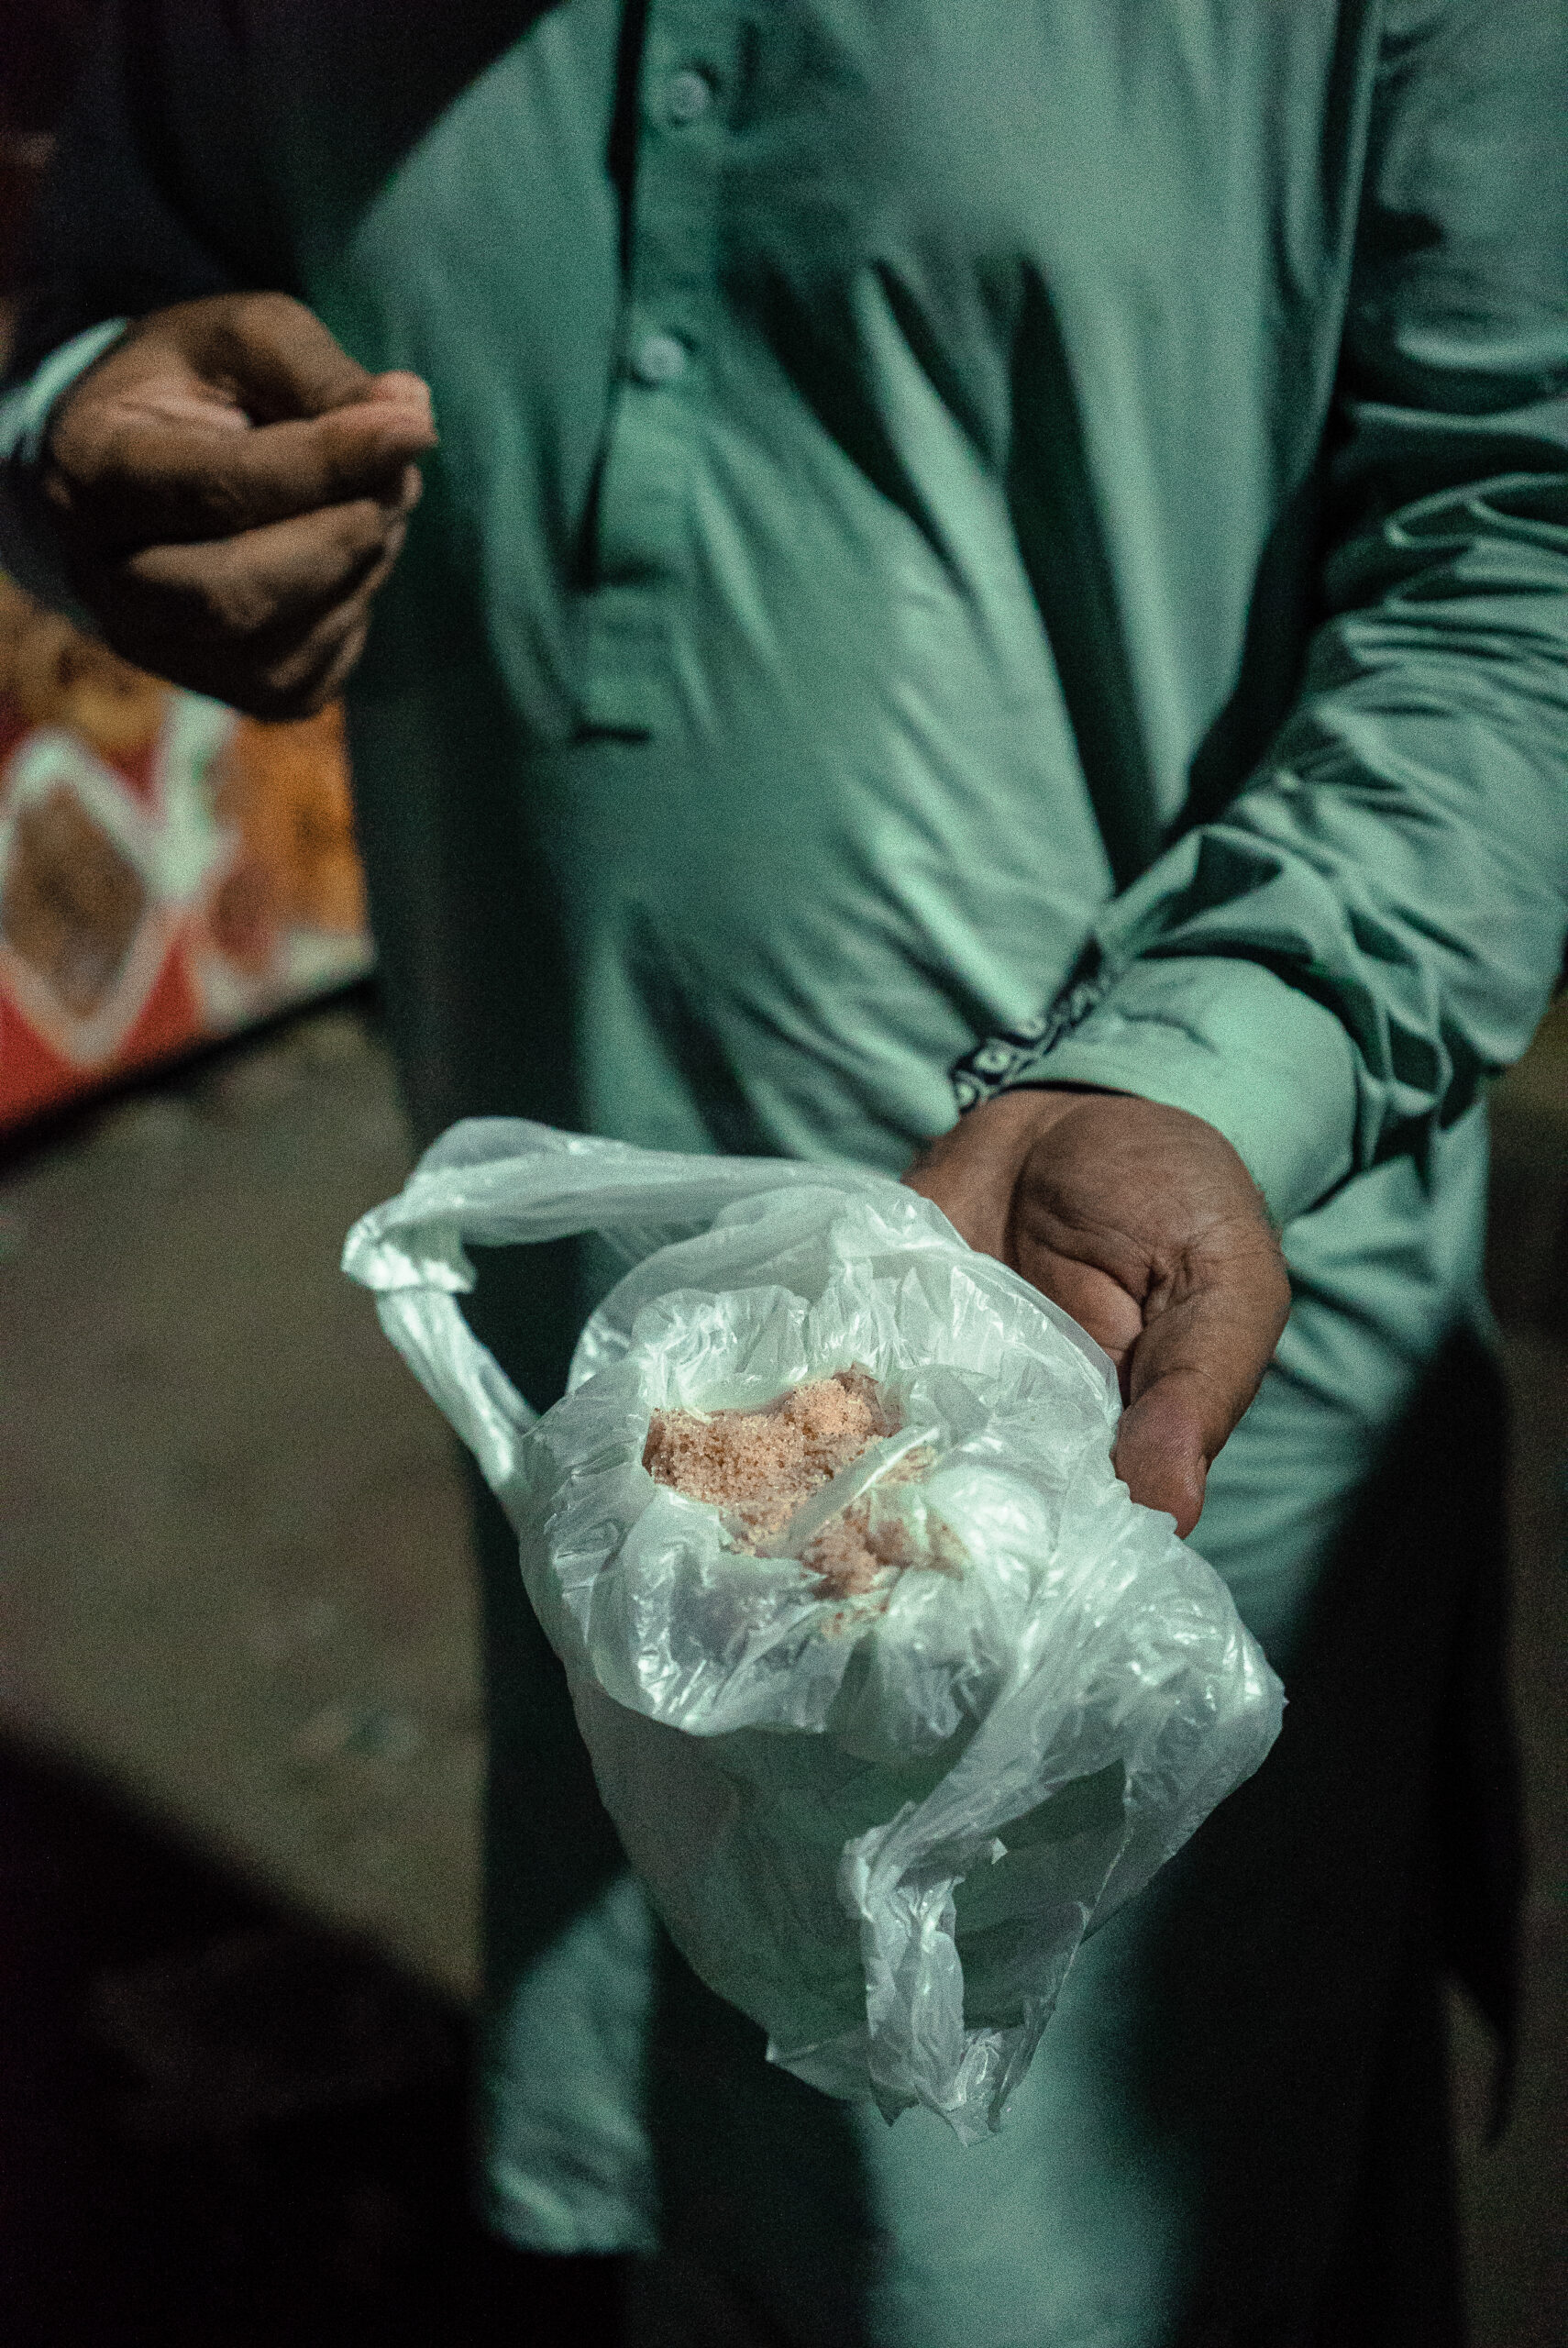 Manifestant partageant du sel rose de l'Himalaya, supposé atténuer les effets du gaz lacrymogène, Karachi, 9 mai. © Laurent Gayer